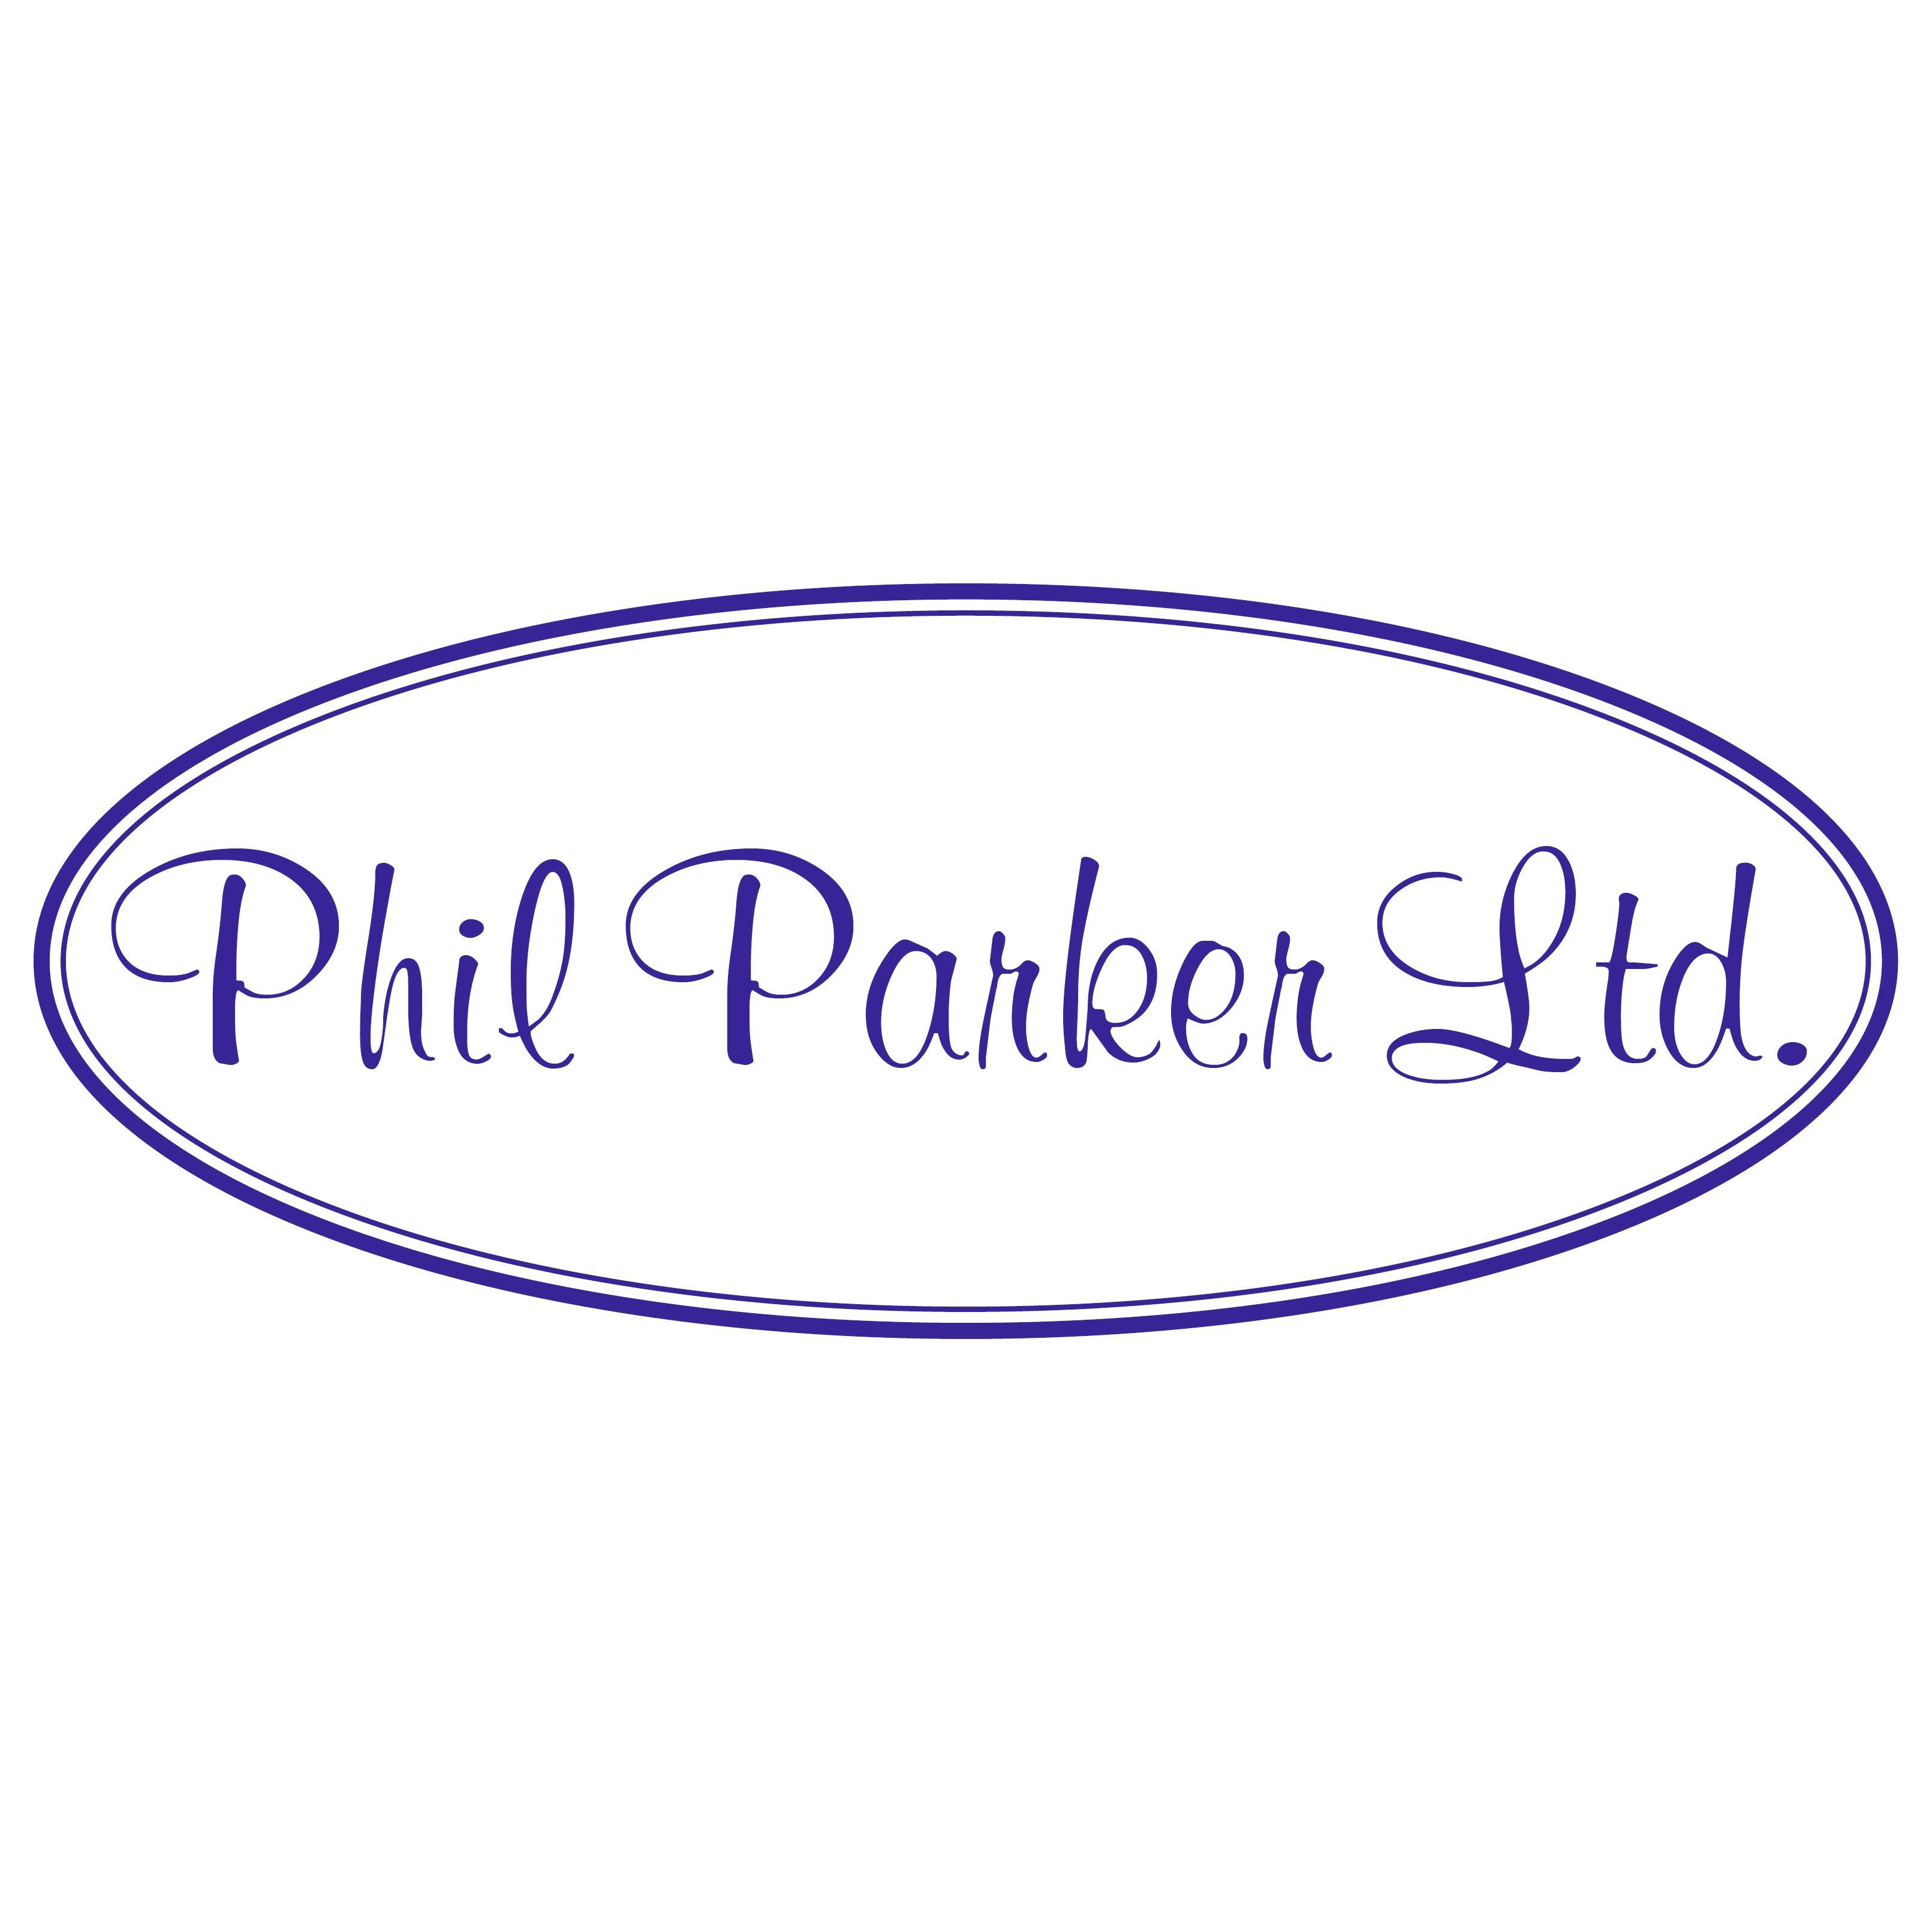 Phil Parker Ltd